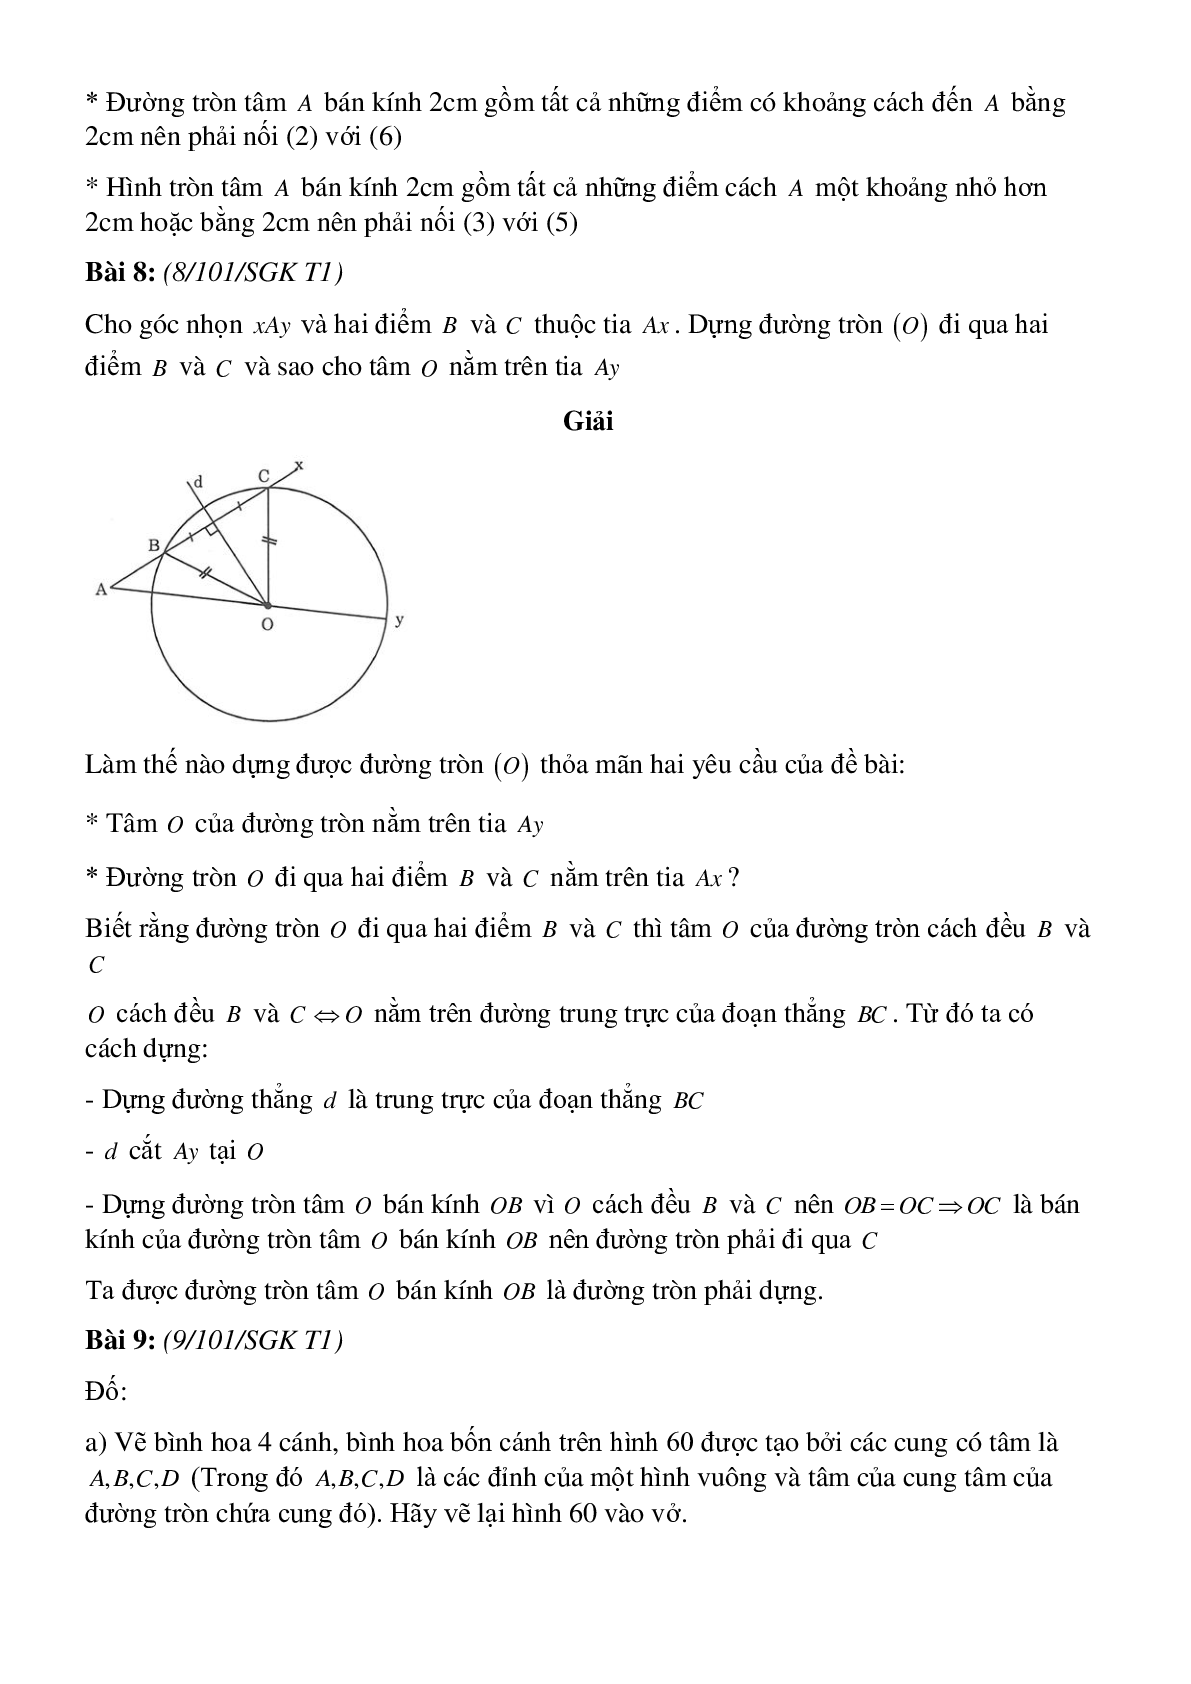 Phương pháp giải, bài tập về Xác định đường tròn - Tính chất đối xứng của đường tròn có lời giải (trang 7)